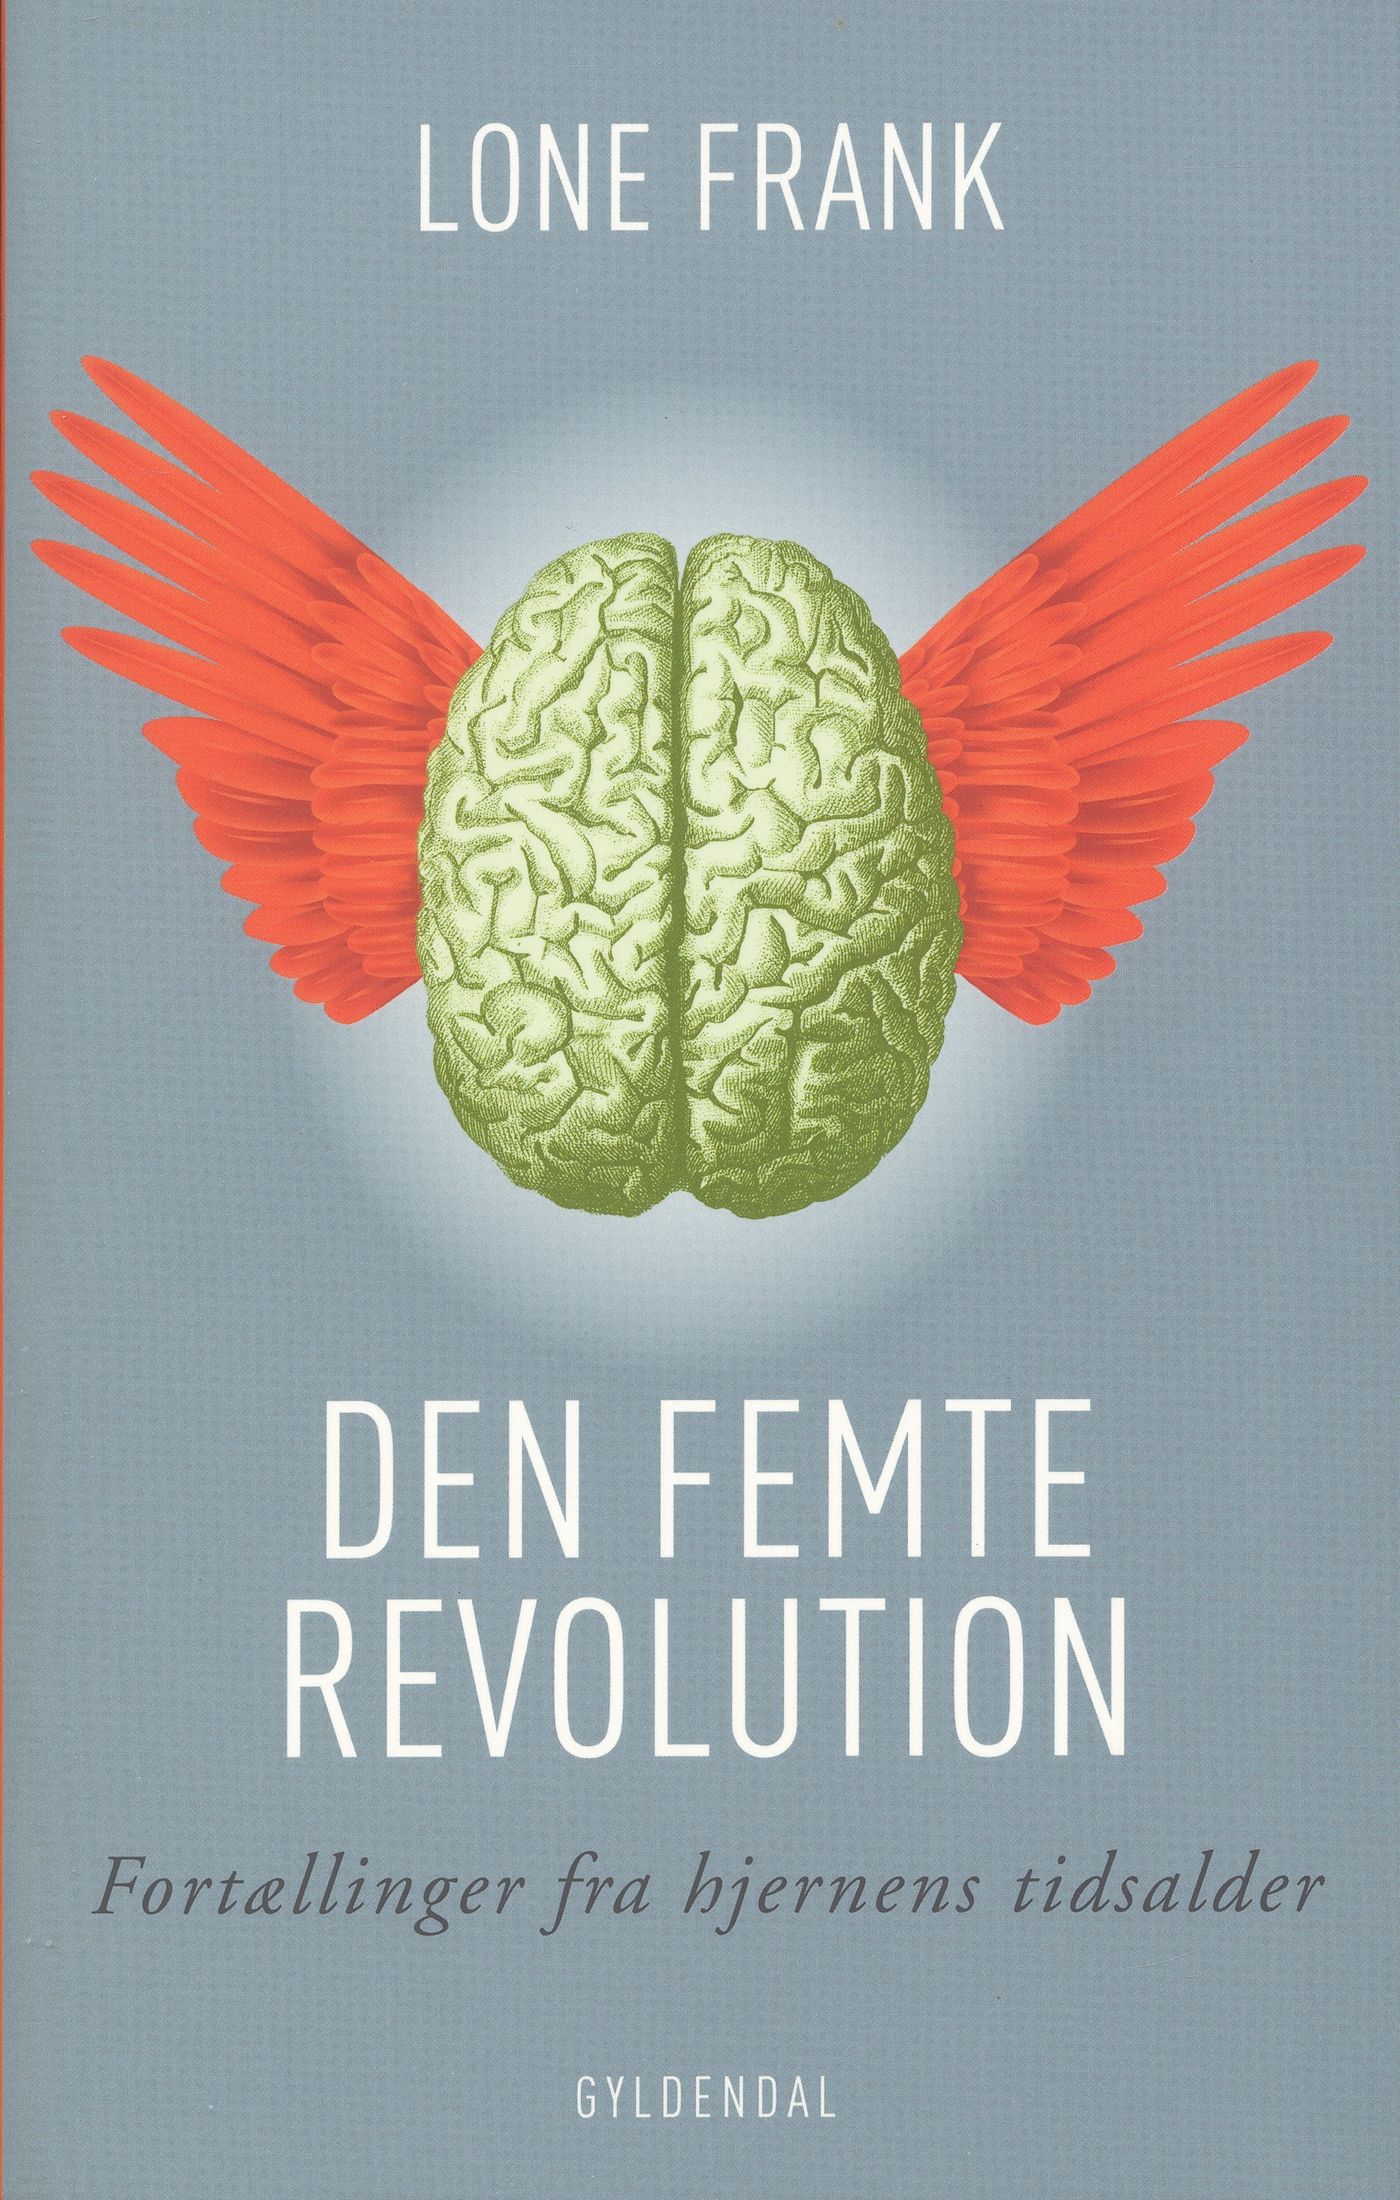 Den femte revolution, eBook by Lone Frank